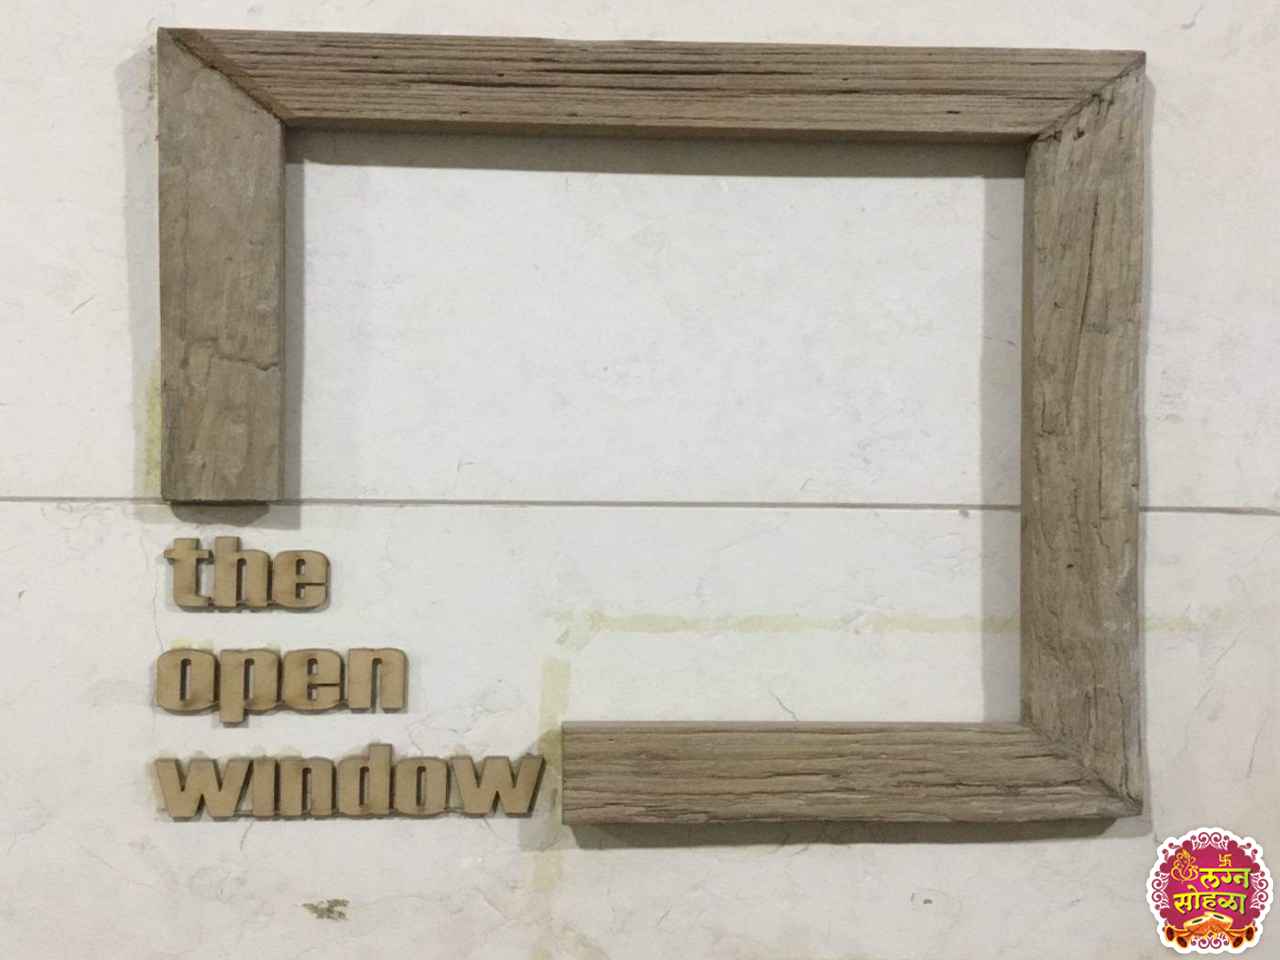 The open window